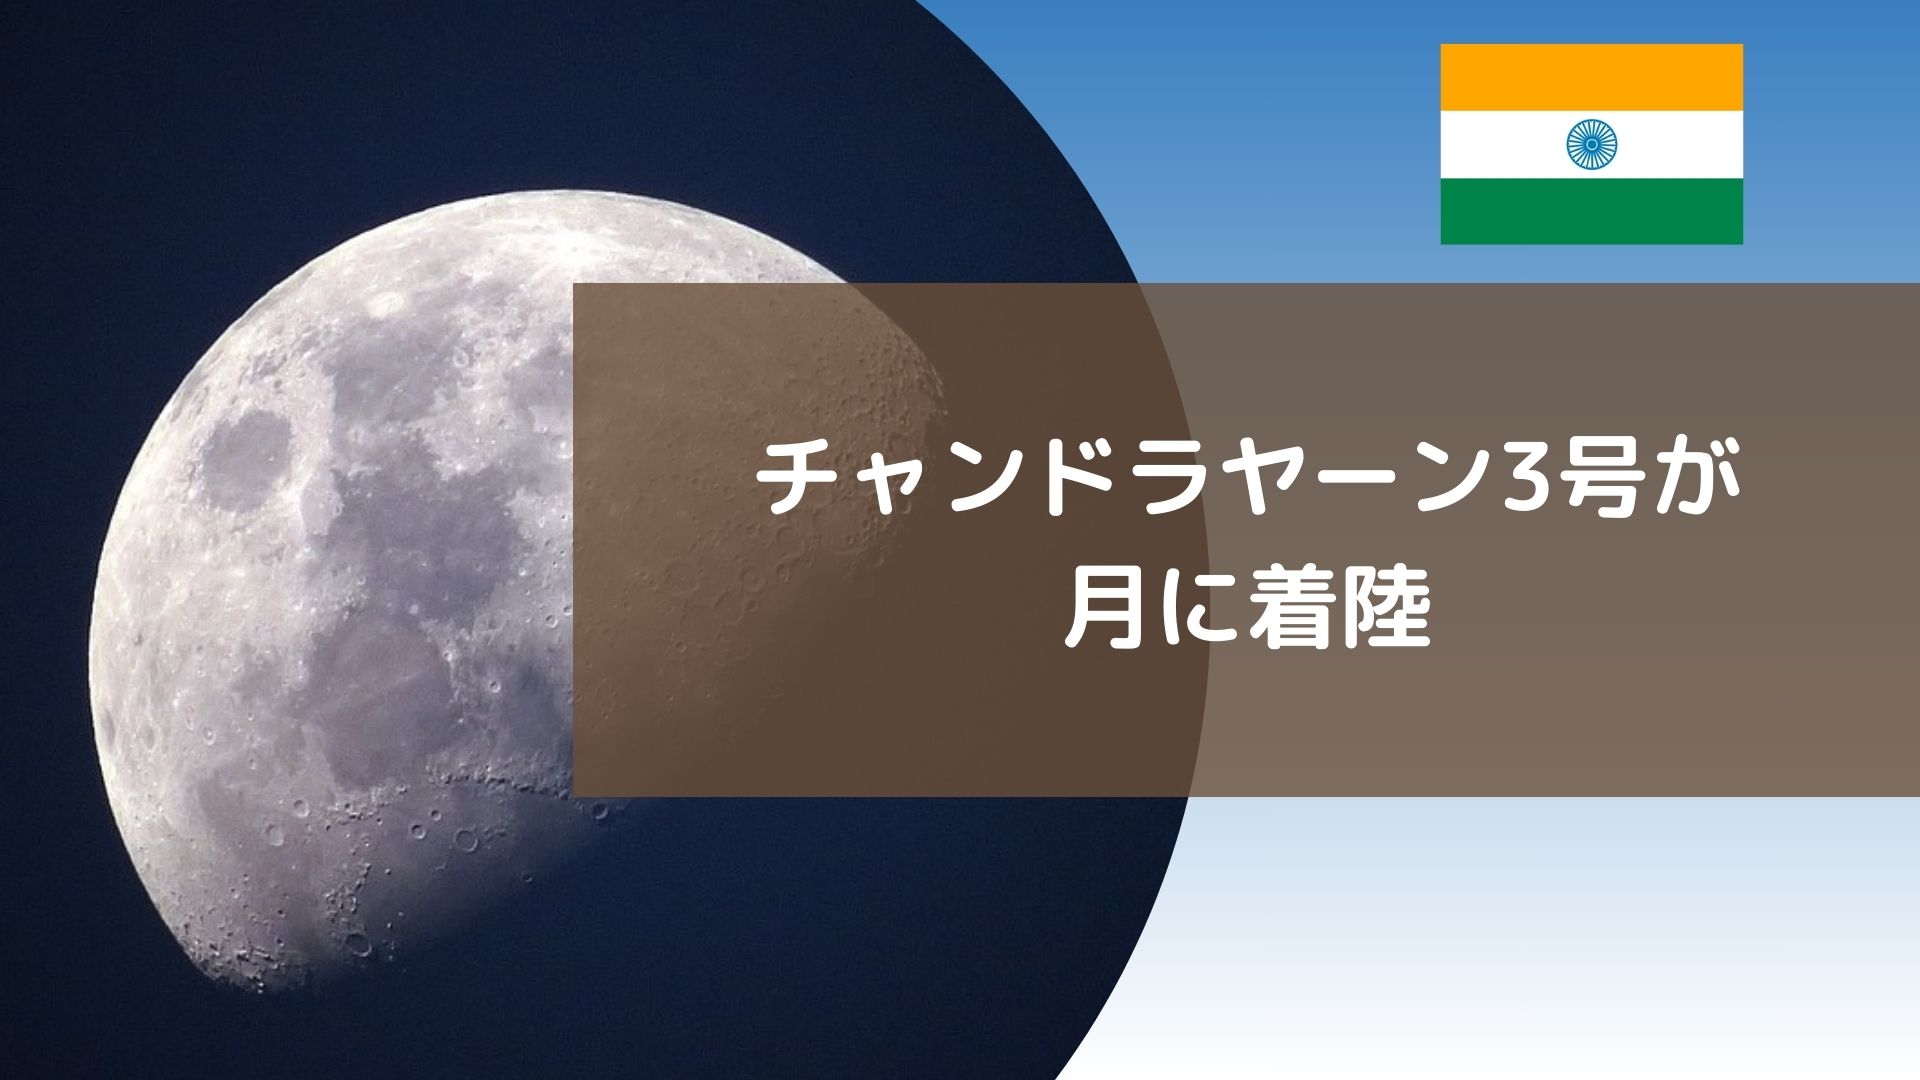 【インド発】「チャンドラヤーン3号」が月に着陸